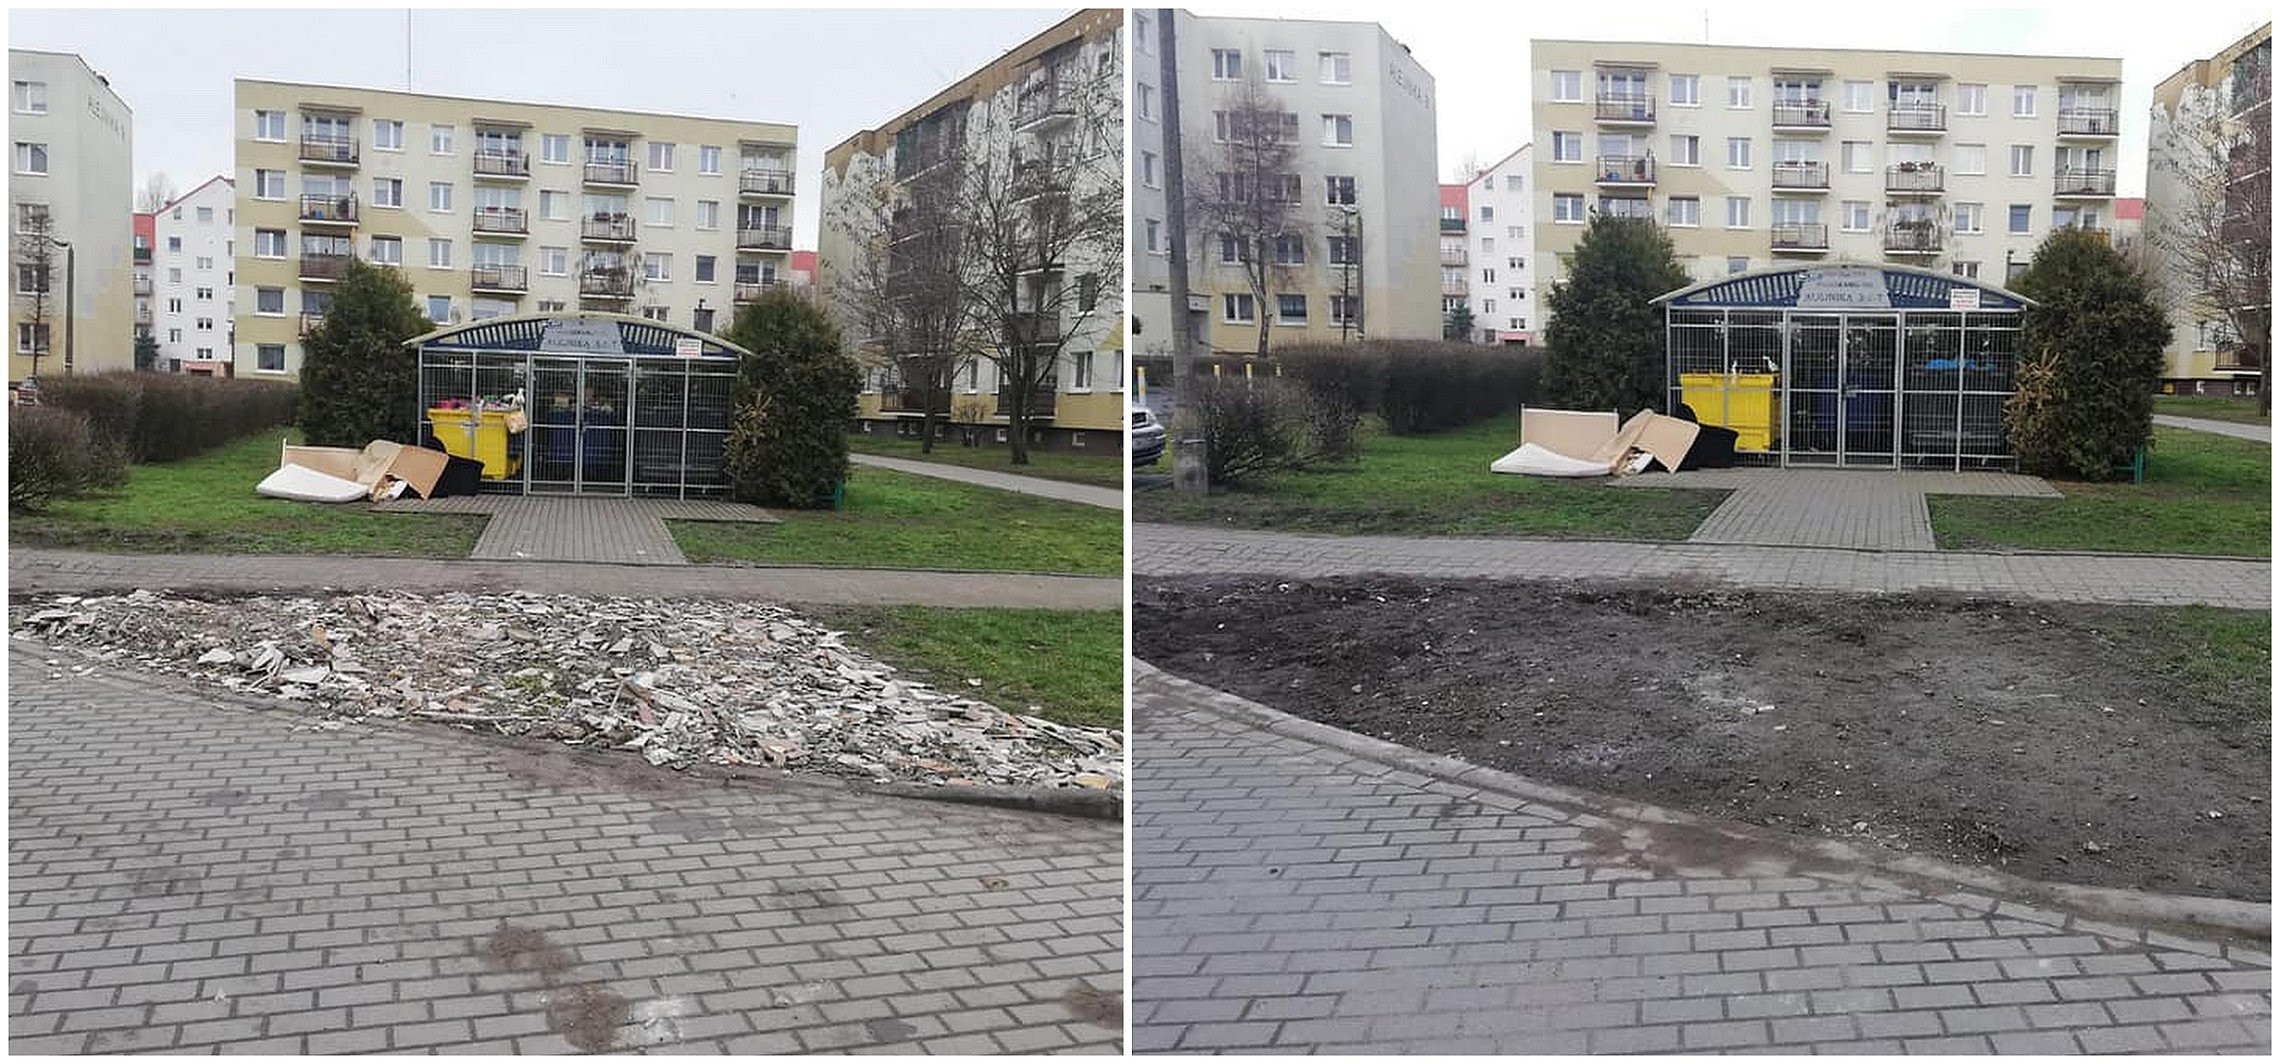 Inowrocław - Zniszczony trawnik zastąpił połamanymi kaflami